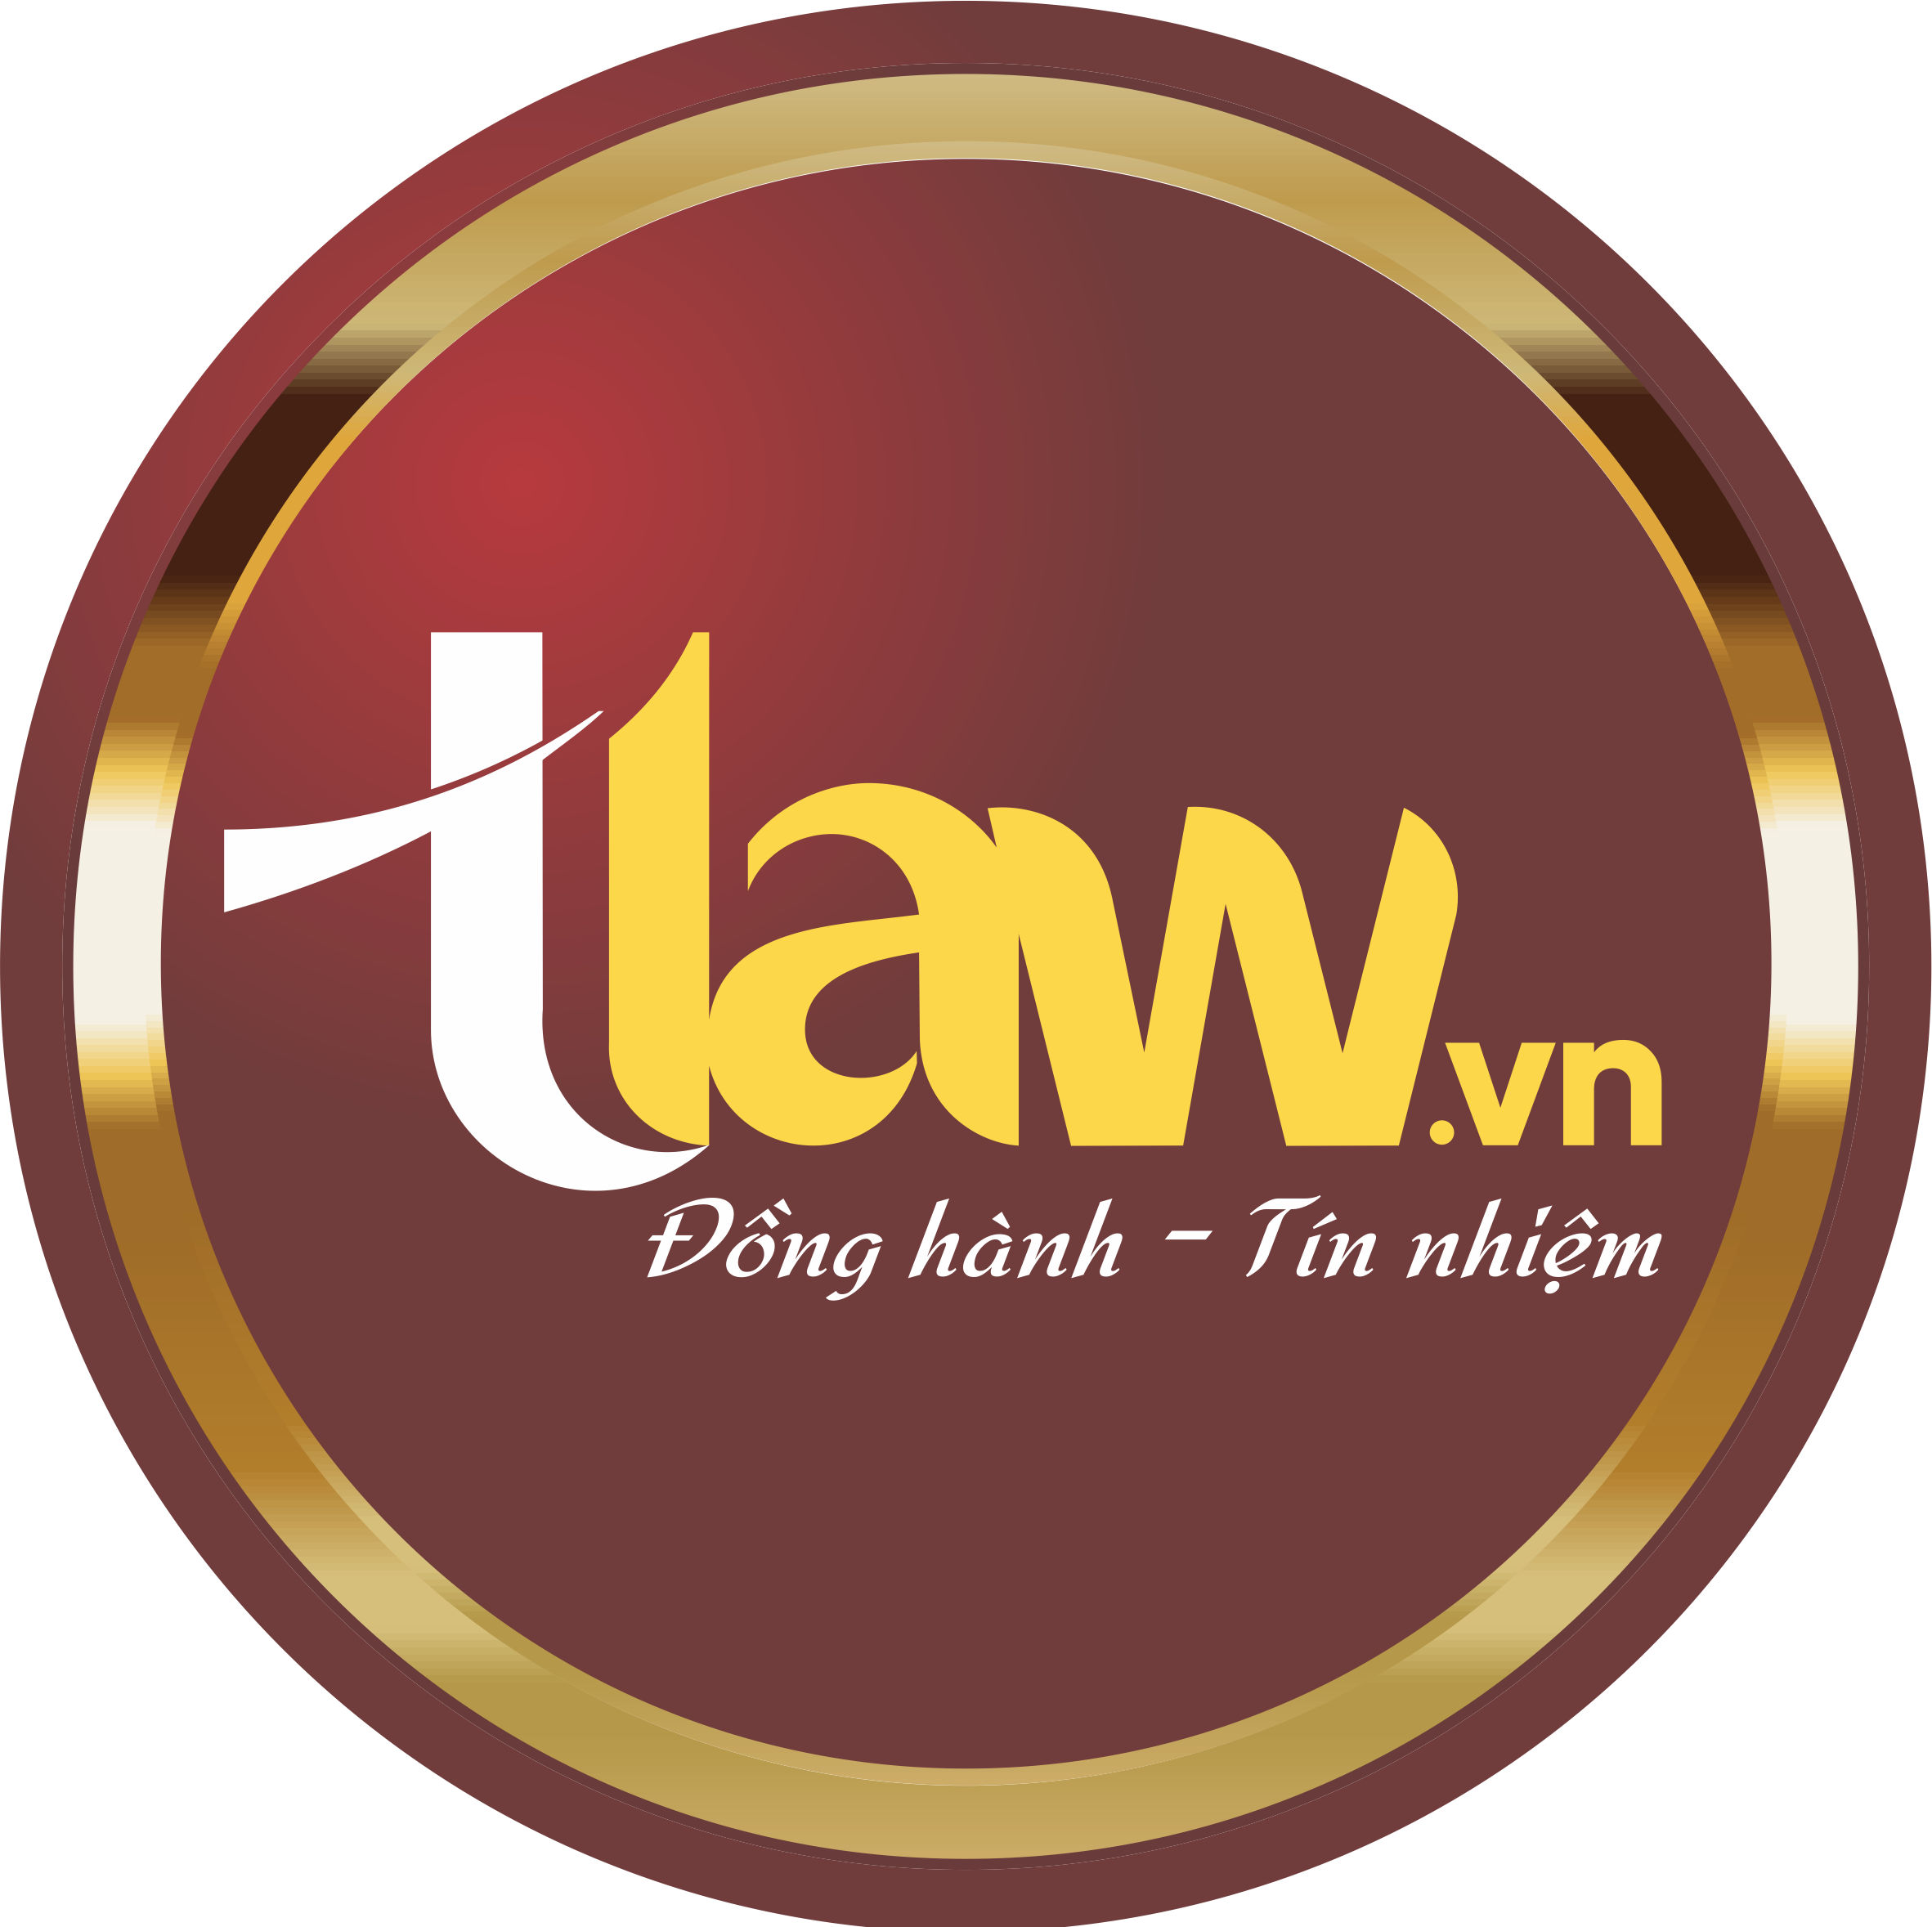 Logo Chi nhánh Công ty Luật TNHH Trương Thành Thiện